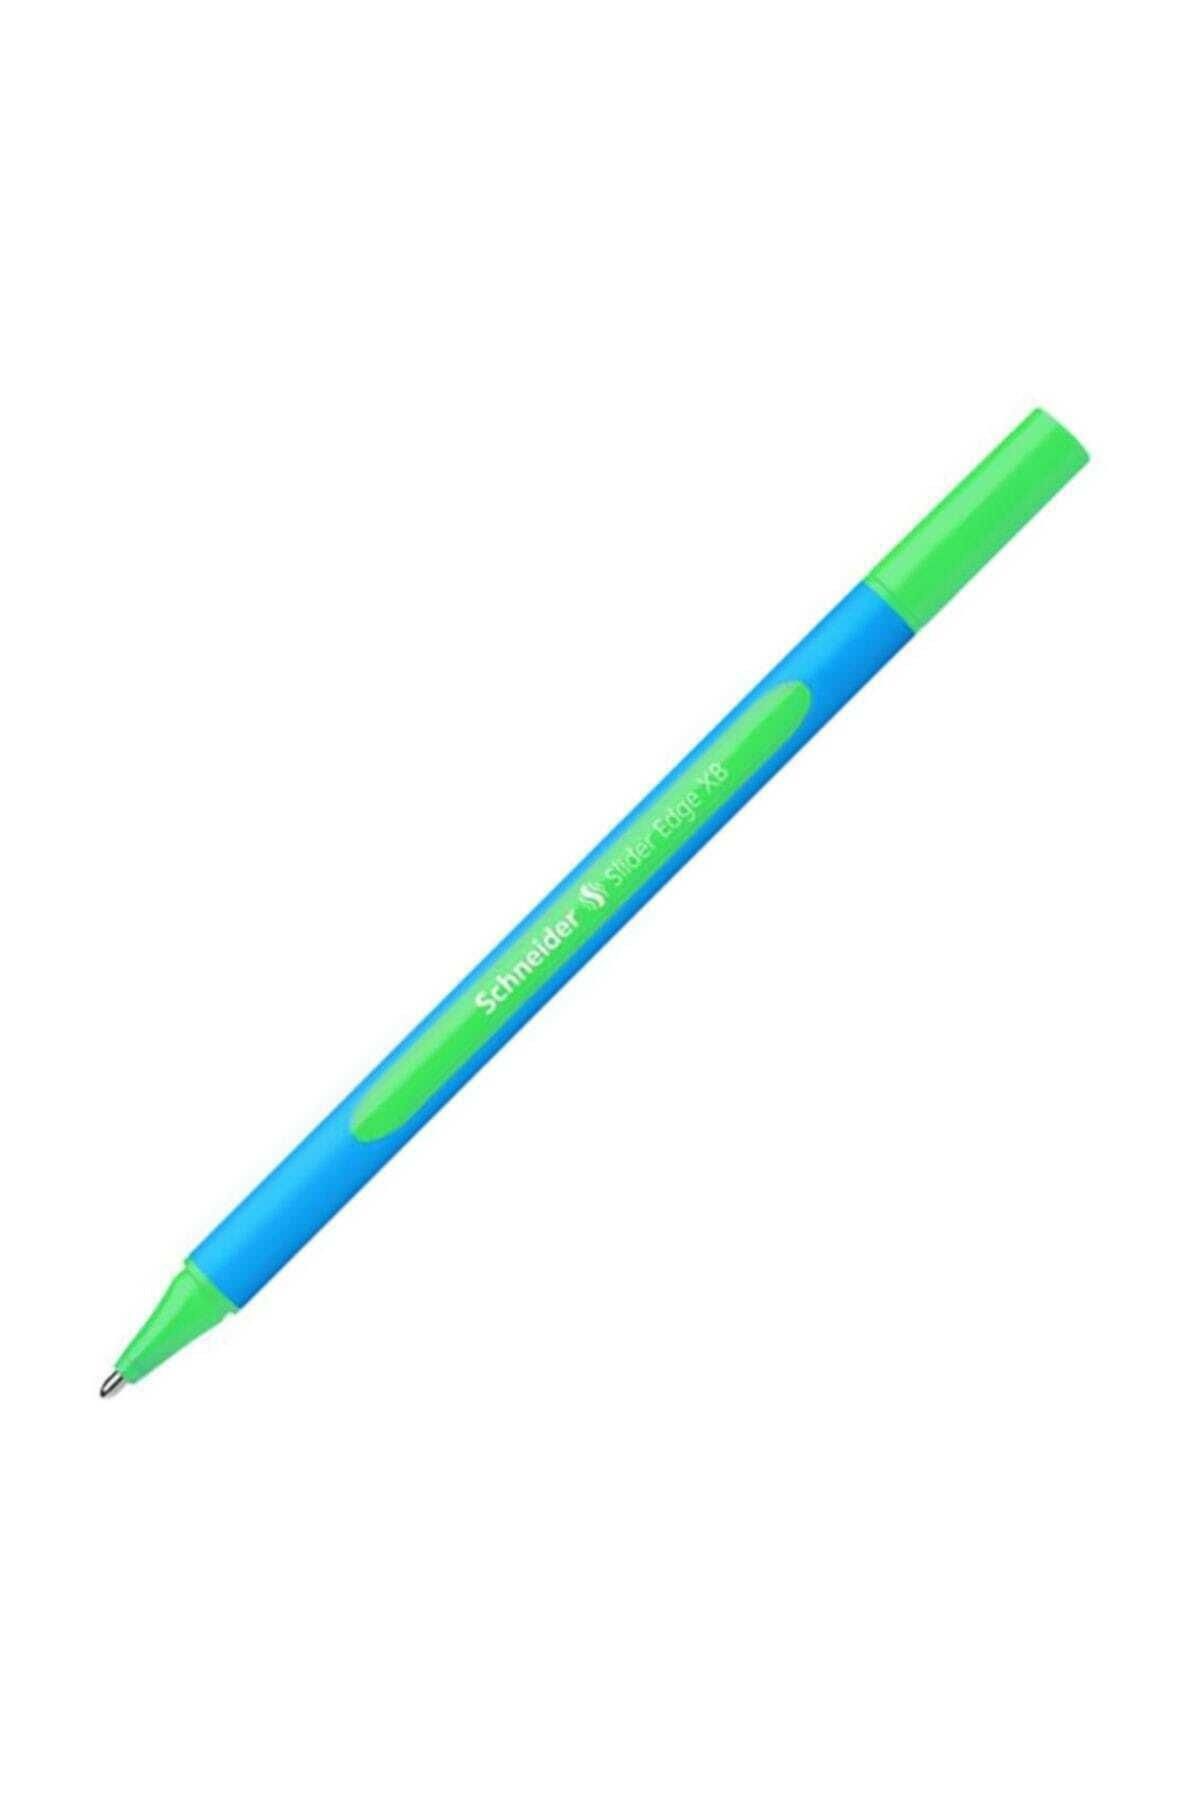 Schneider Tükenmez Kalem Slider Edge Xb 1.0 Mm Bilye Uç Açık Yeşil (10 LU PAKET)